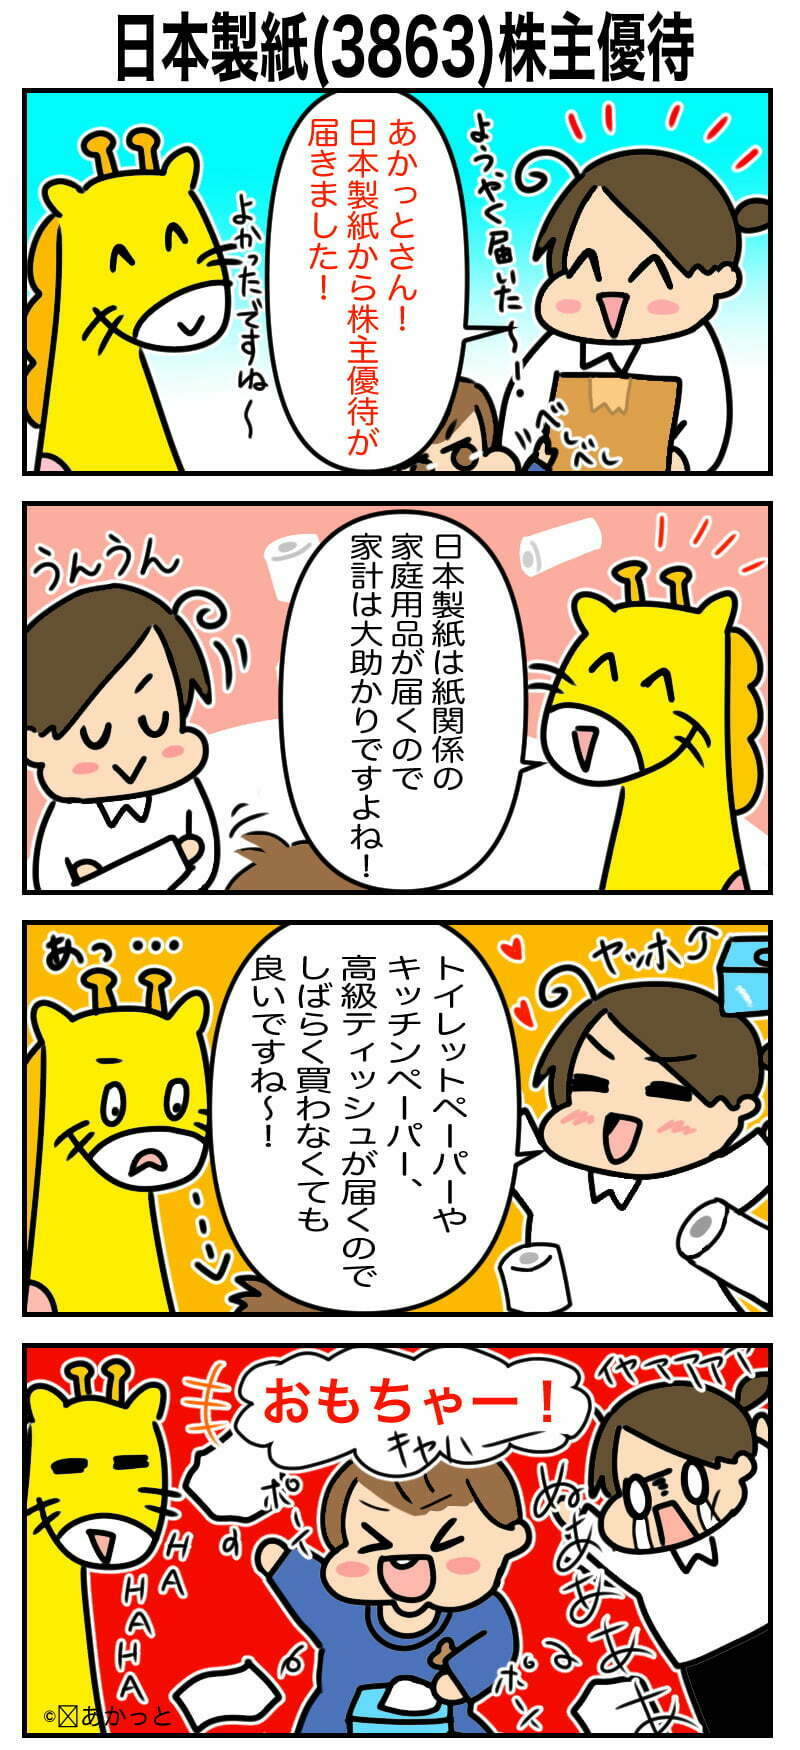 日本製紙(3863)株主優待についての解説漫画です。